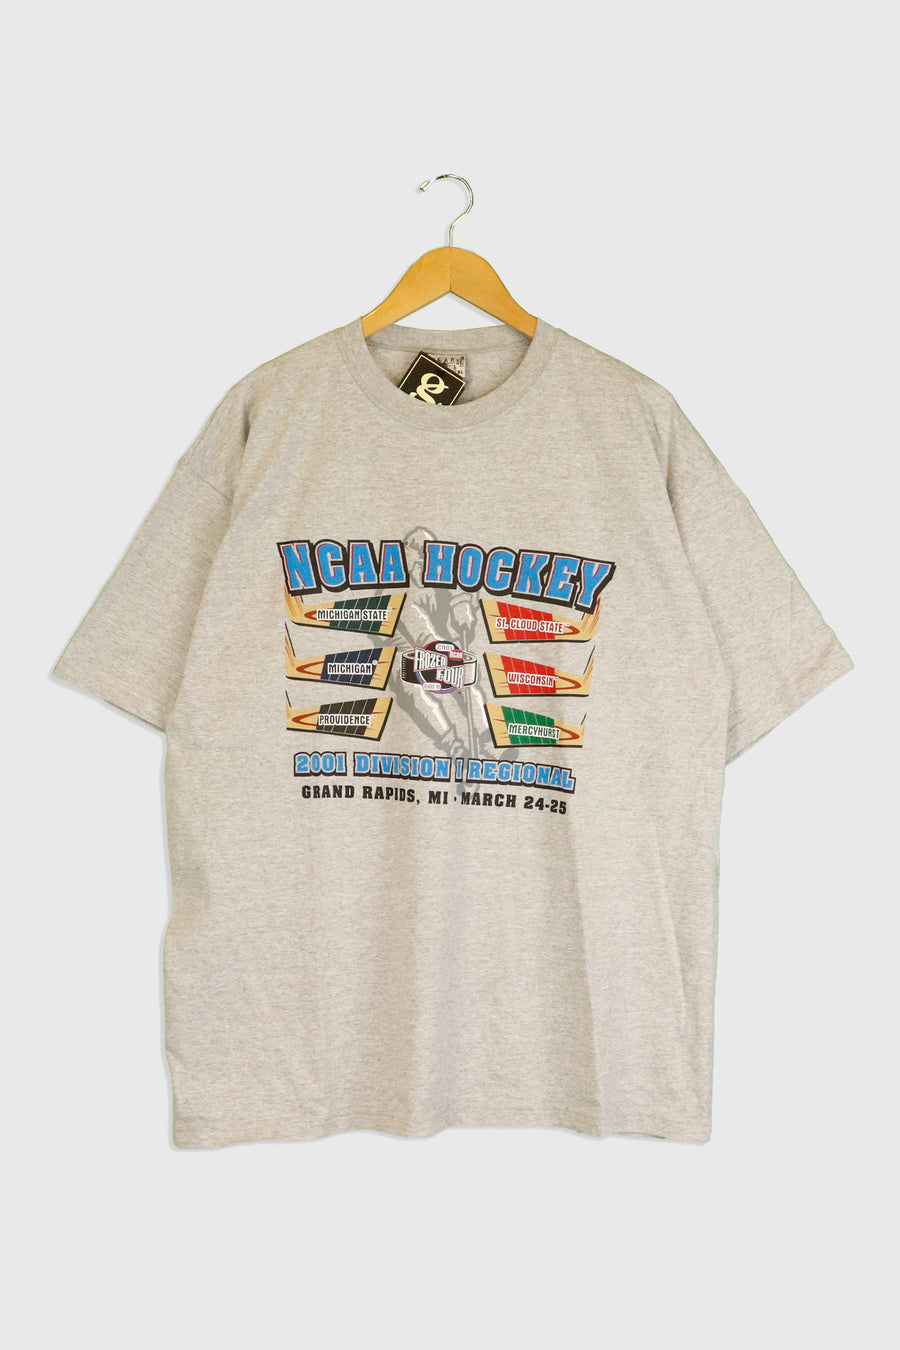 Vintage 2001 NCAA Hockey Tour T Shirt Sz XL